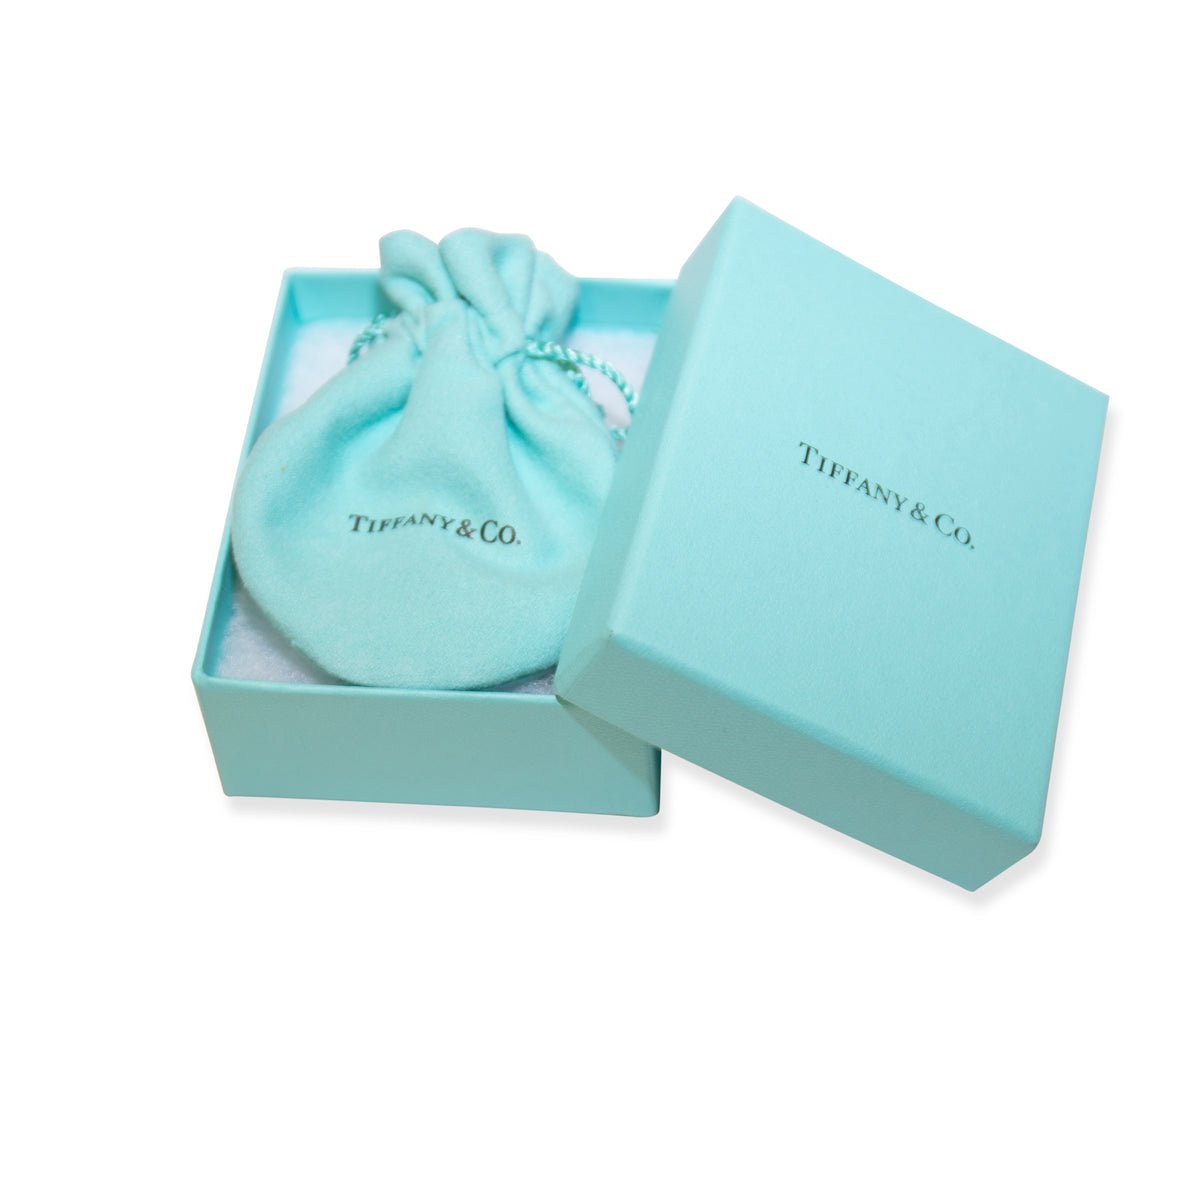 Tiffany & Co. Return to Tiffany Mini Heart Tag Ball Bracelet 18K Yellow Gold